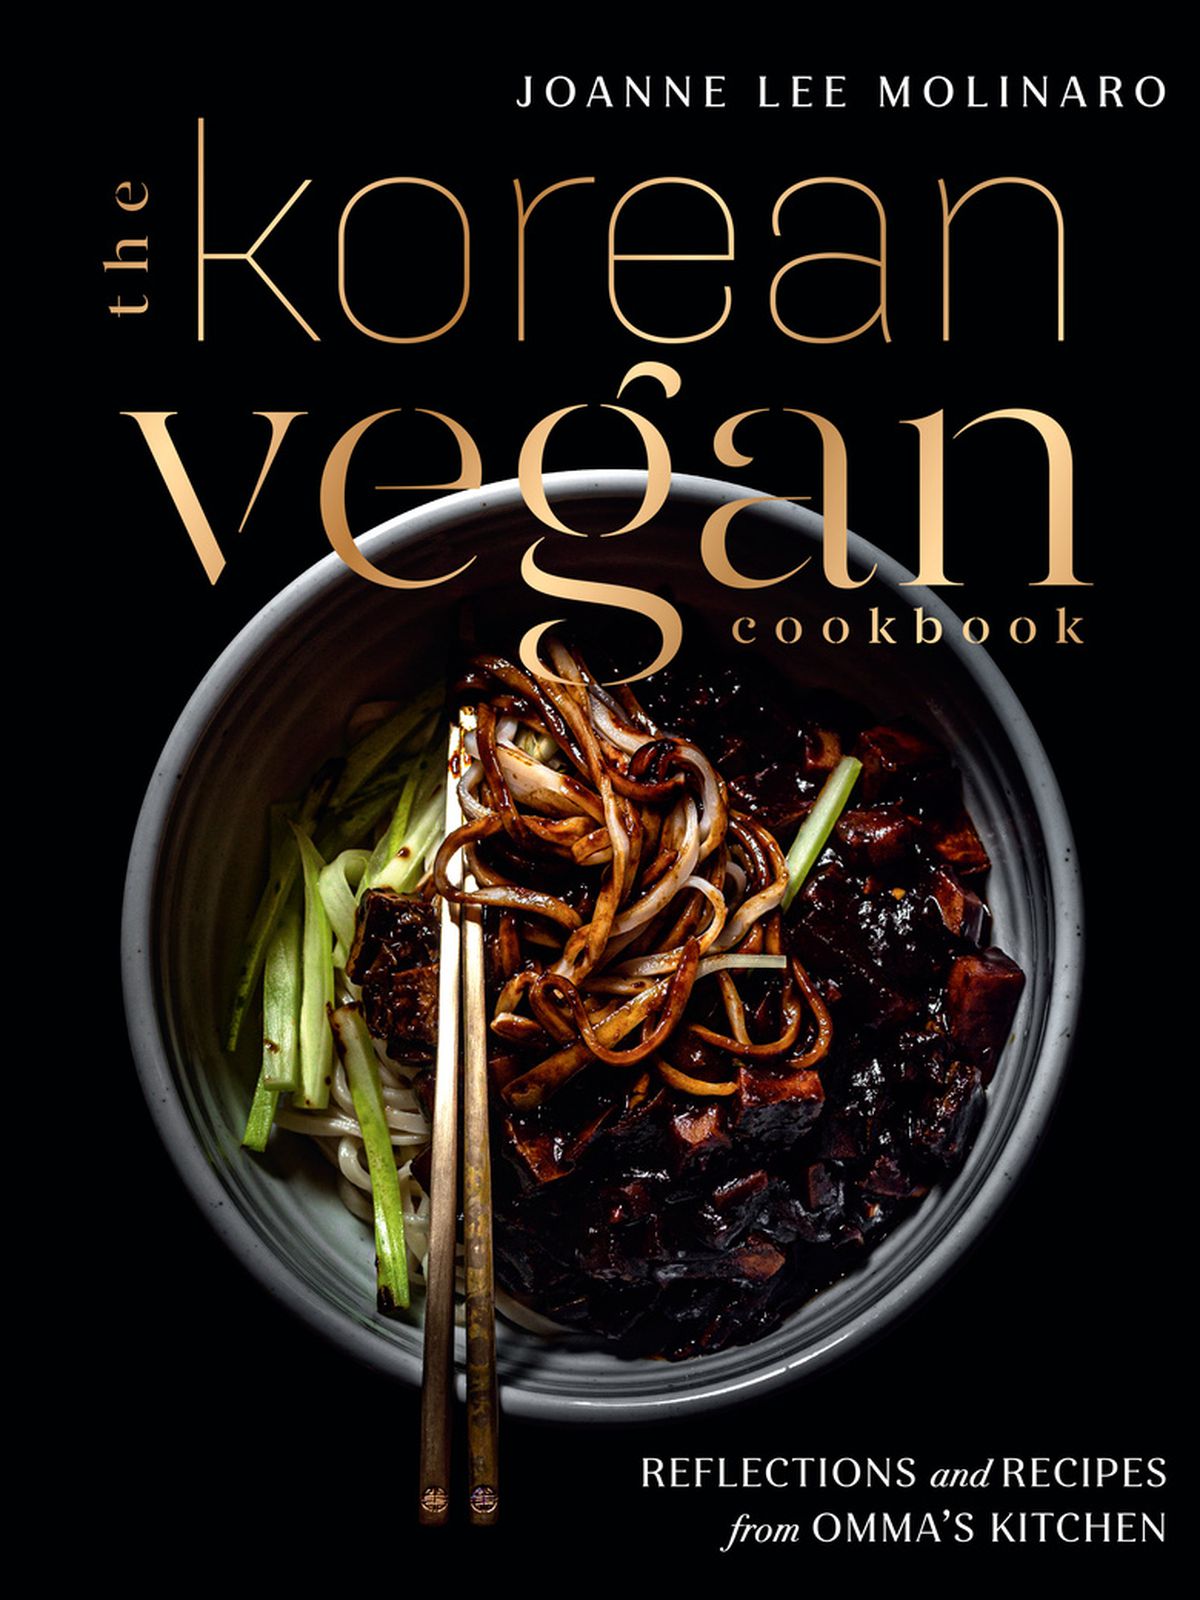 The Korean Vegan cookbook cover 